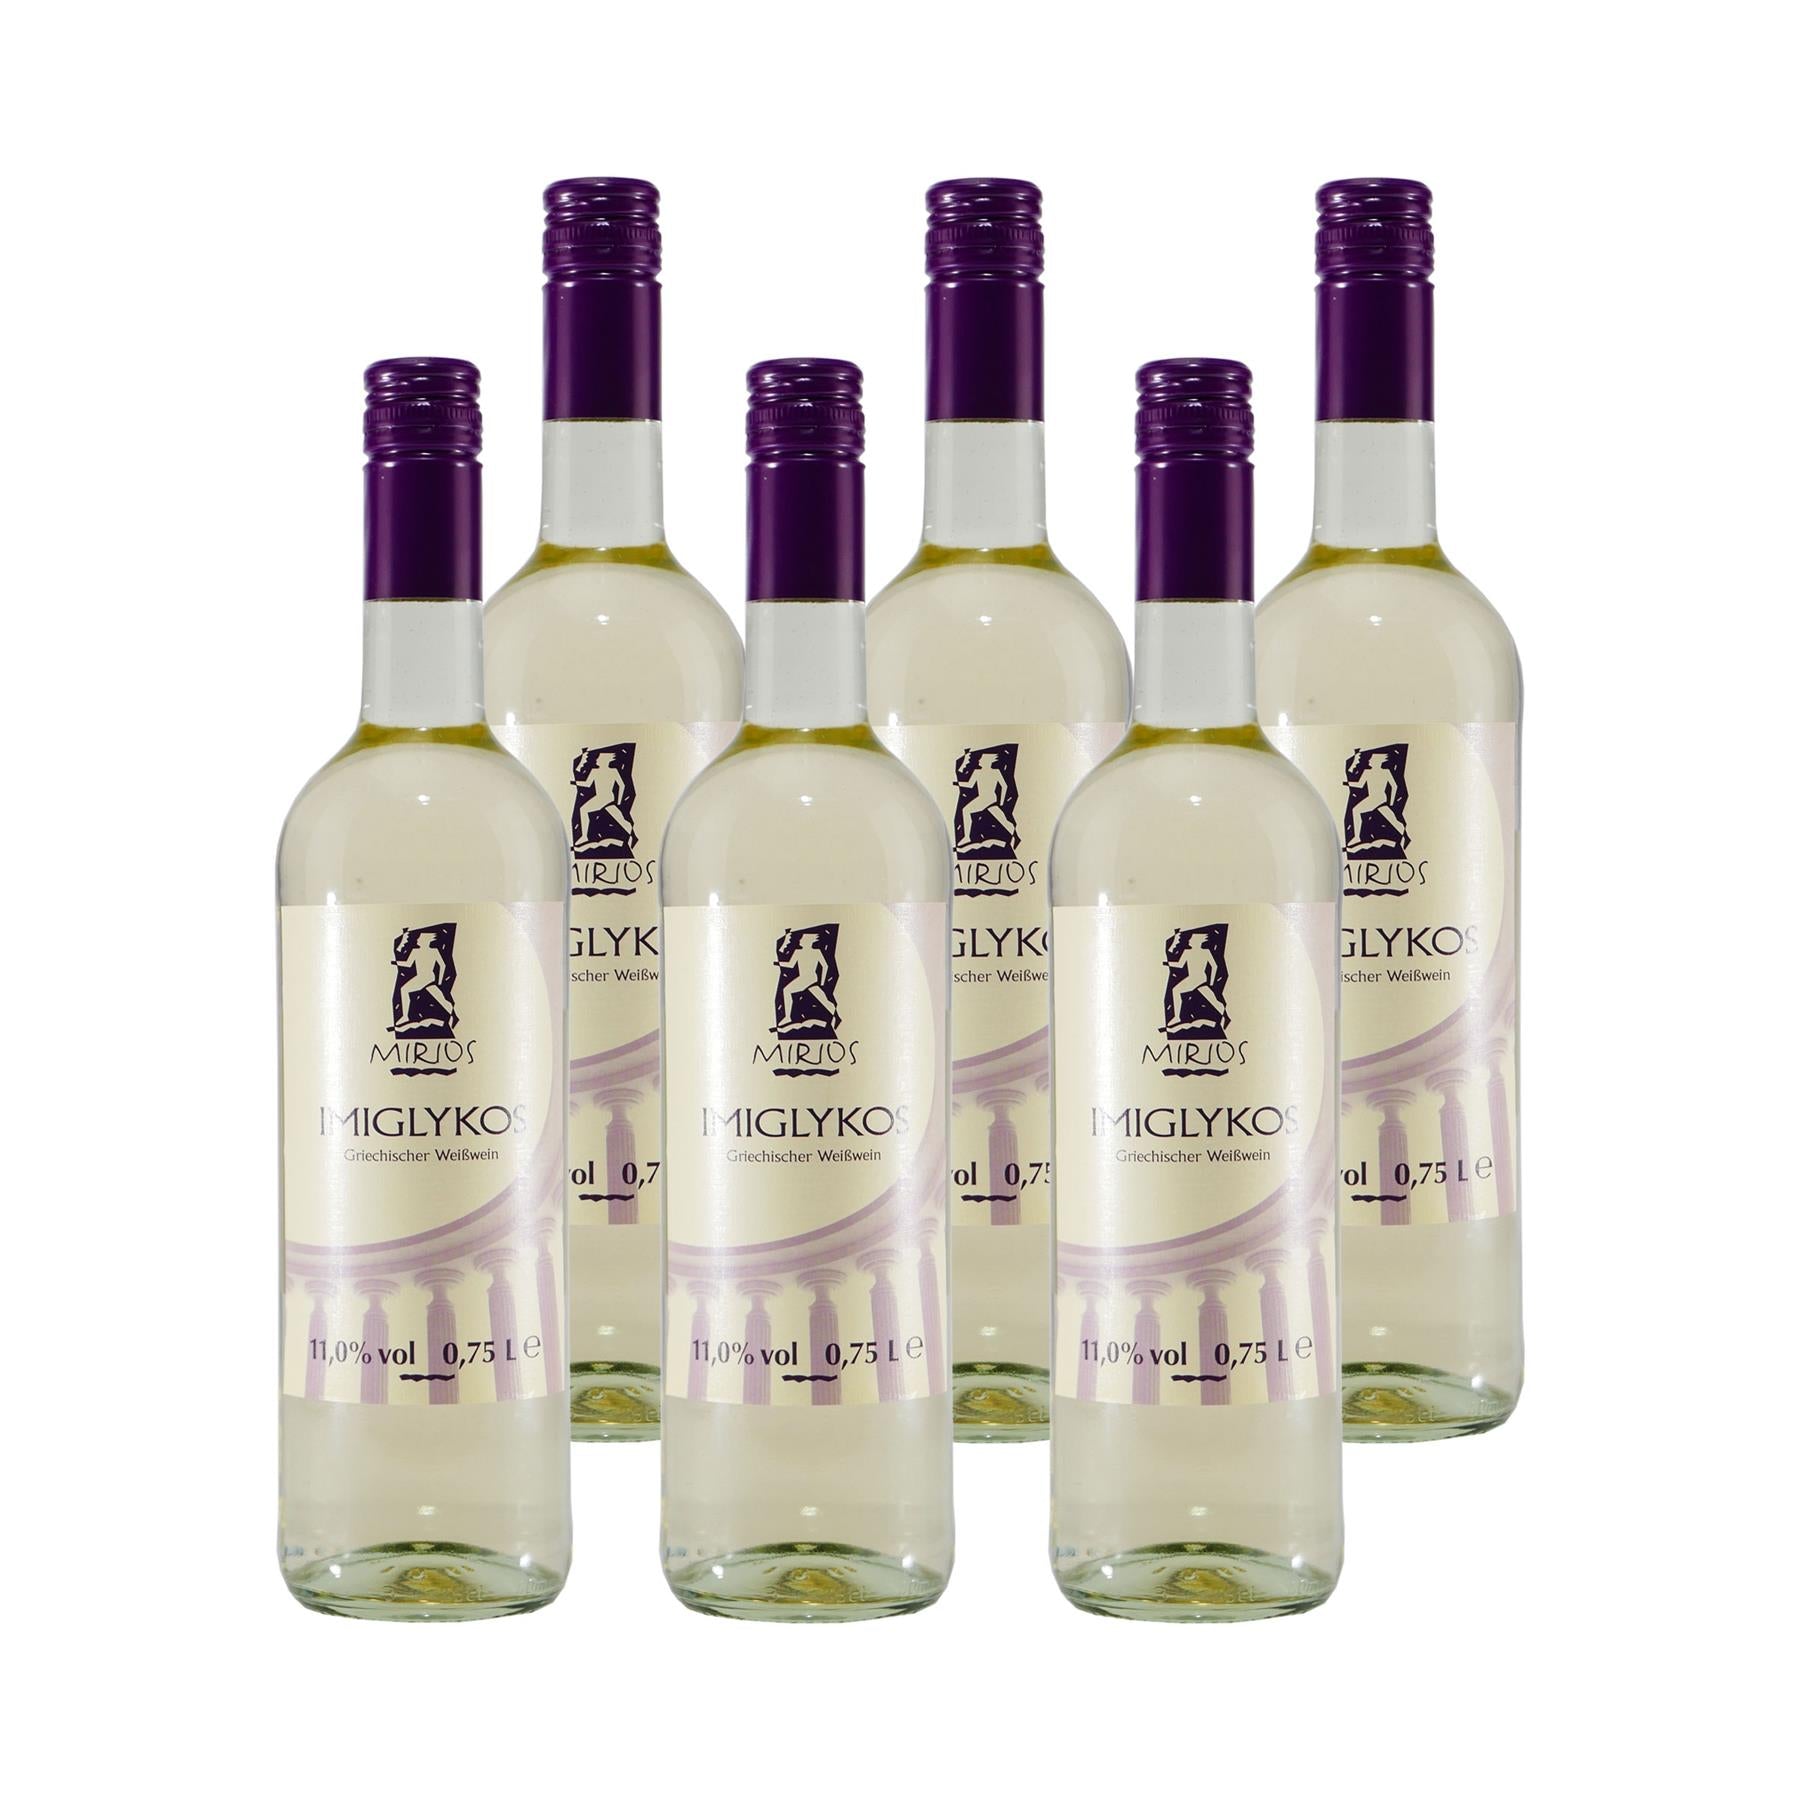 Miros Imiglykos Griechischer Weißwein (6 x 0,75L)